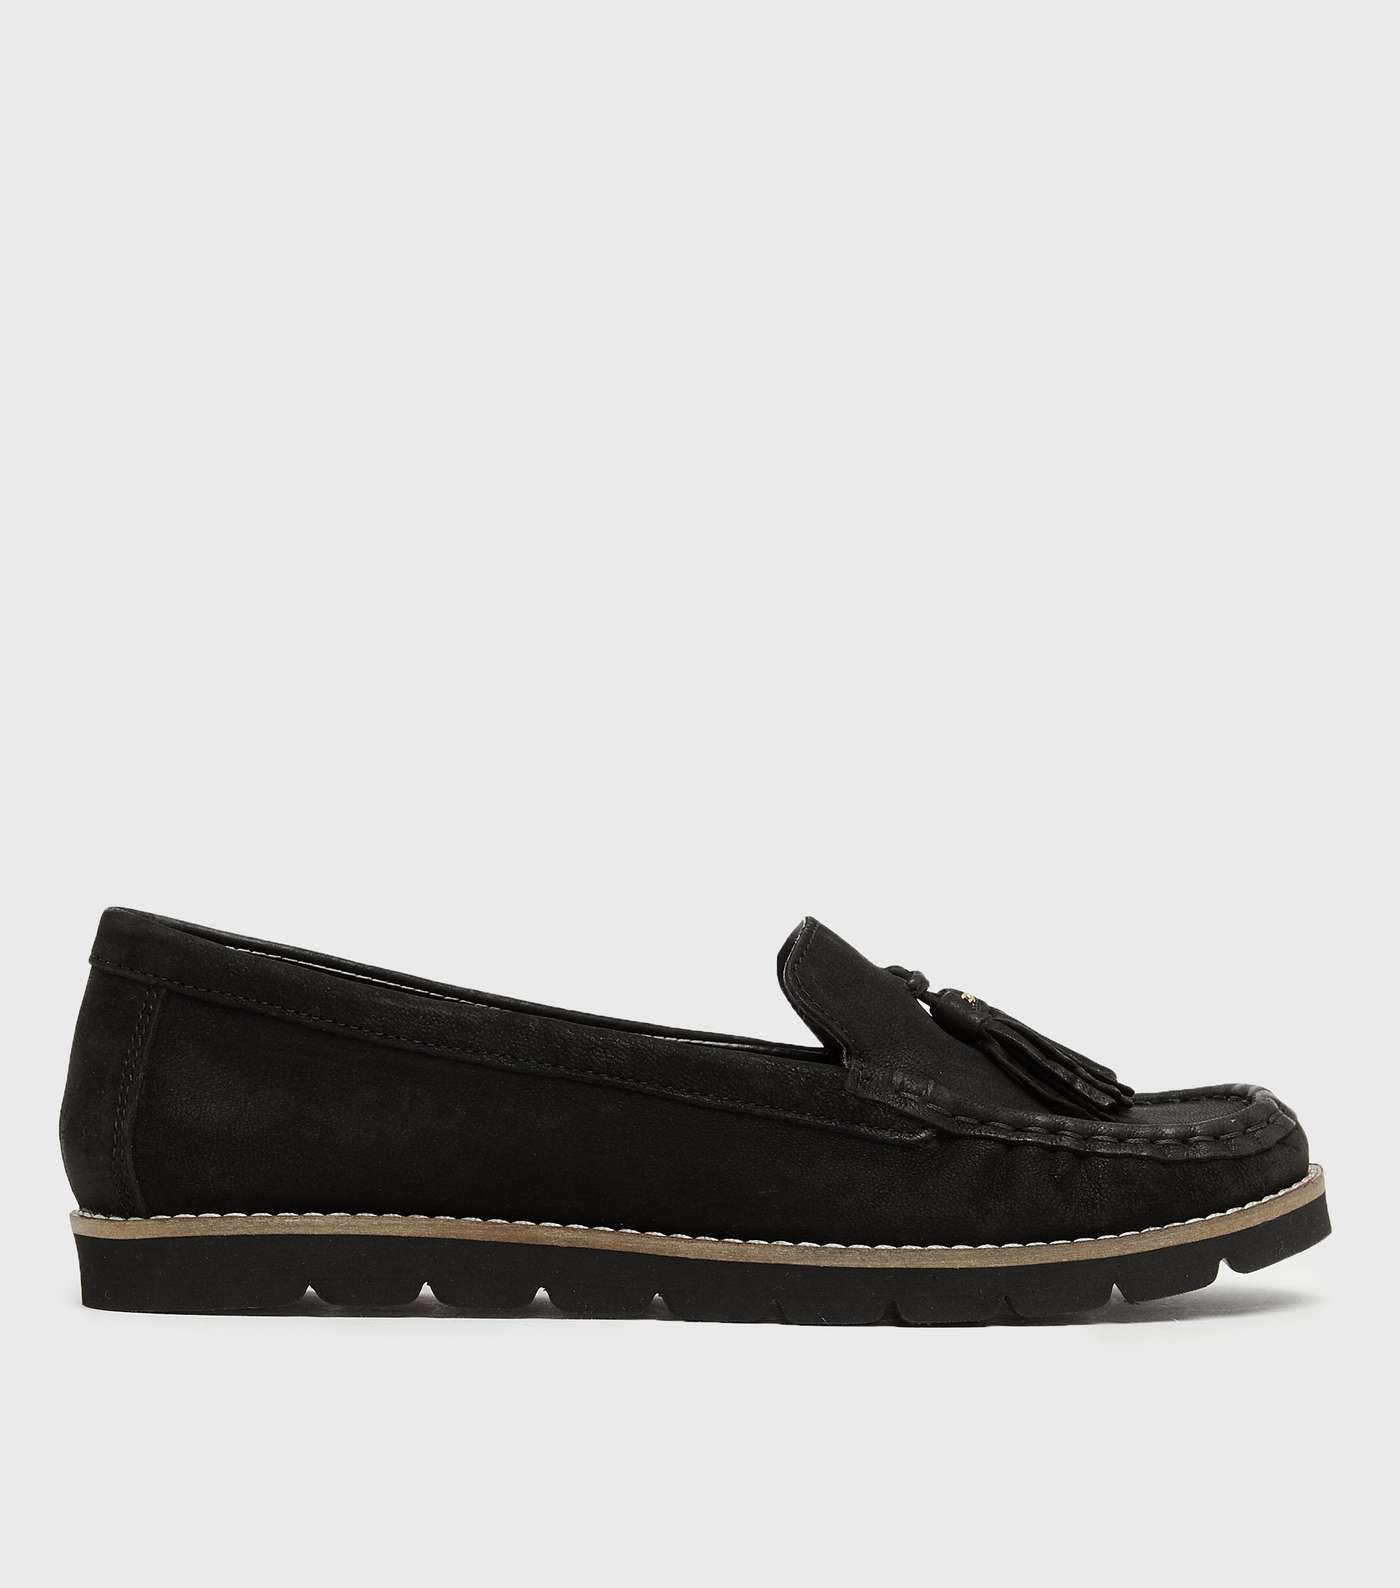 Black Leather Tassel Flexible Sole Loafers